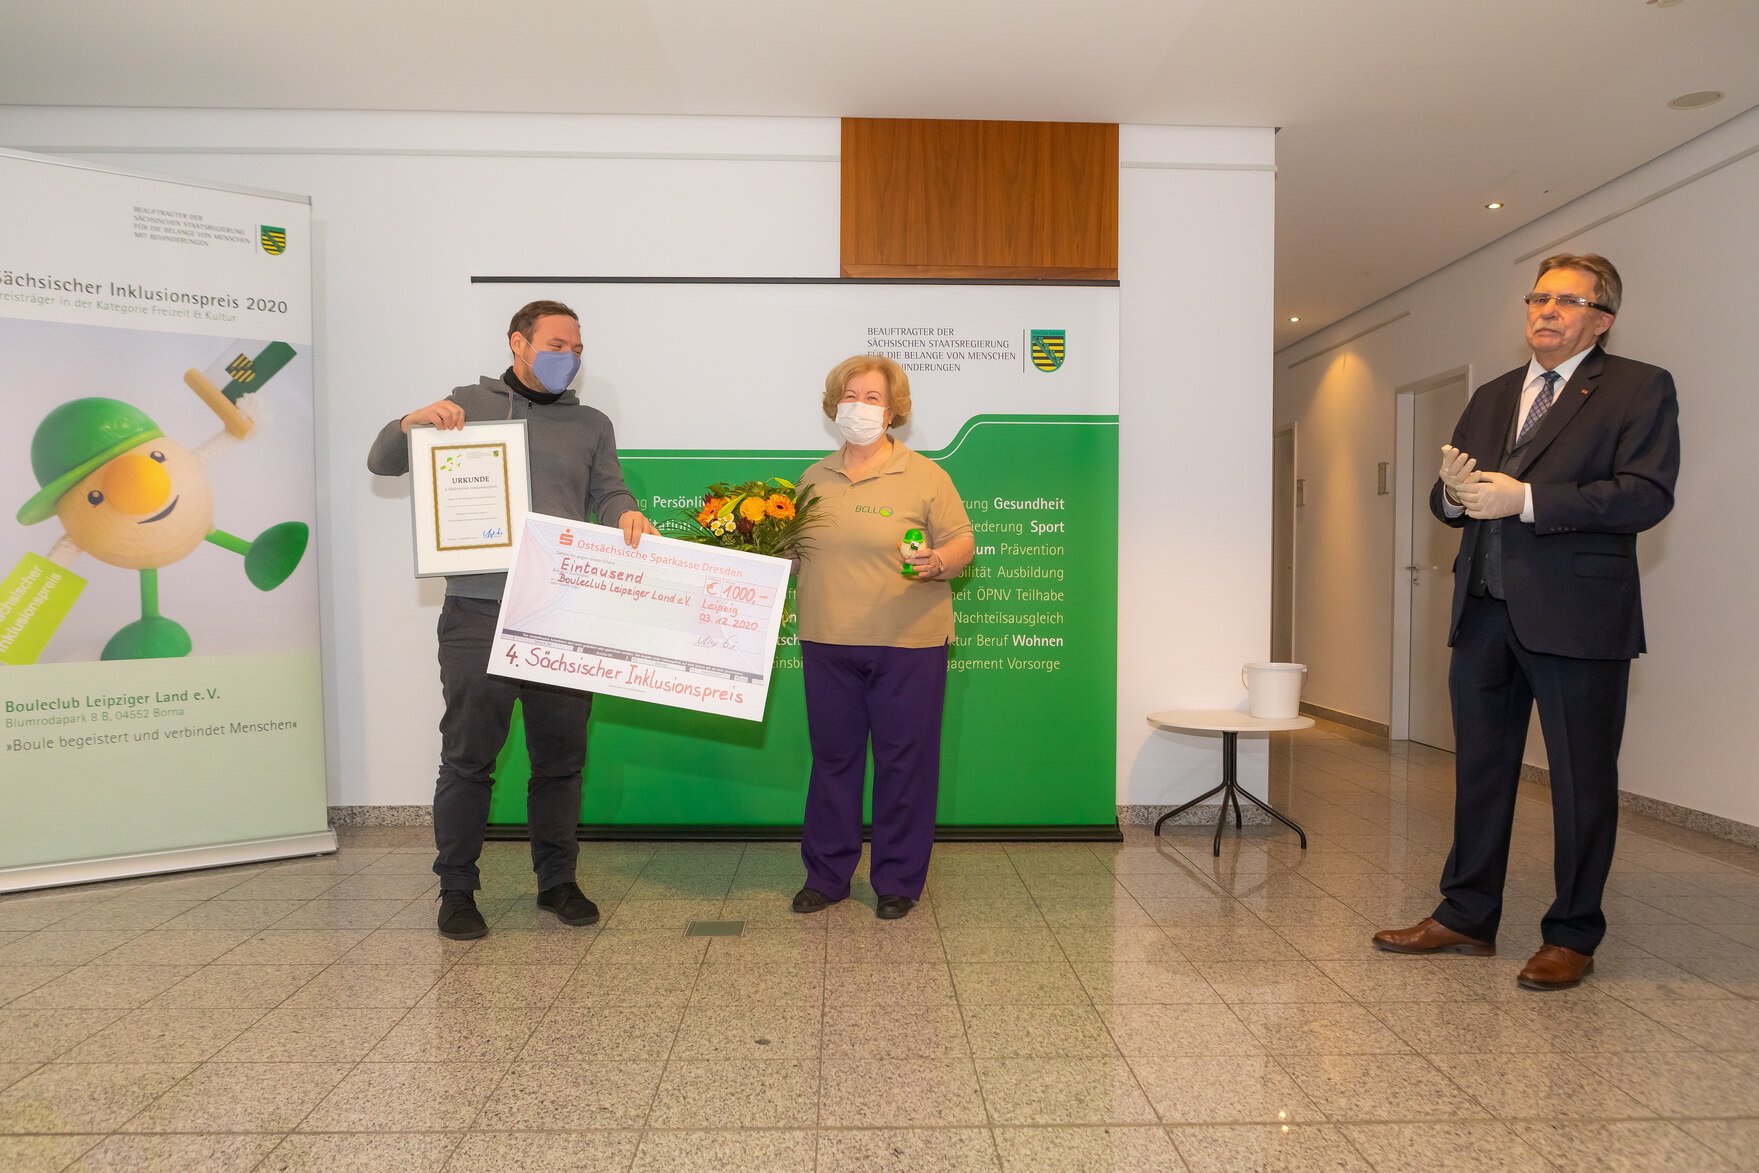 Die Preisträger der Kategorie Freizeit & Kultur, Vertreter des Projektes Bouleclub Leipziger Land e. V., stehen neben dem Beauftragten und halten ihre Auszeichnung - einen Scheck, eine Urkunde, eine Preisfigur und einen Blumenstrauß - in die Kamera.